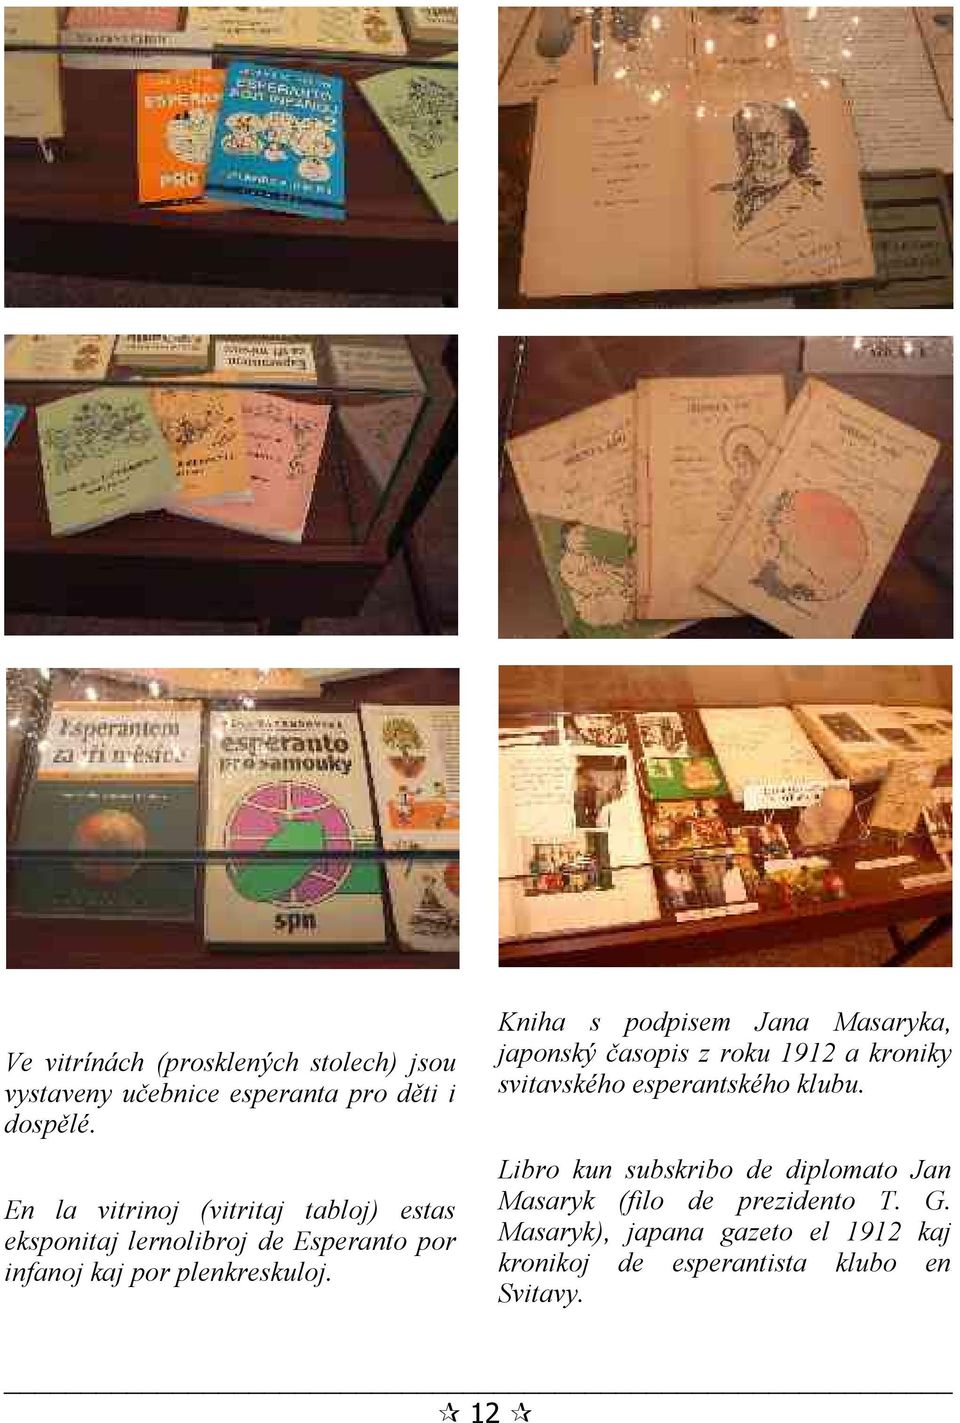 Kniha s podpisem Jana Masaryka, japonský časopis z roku 1912 a kroniky svitavského esperantského klubu.